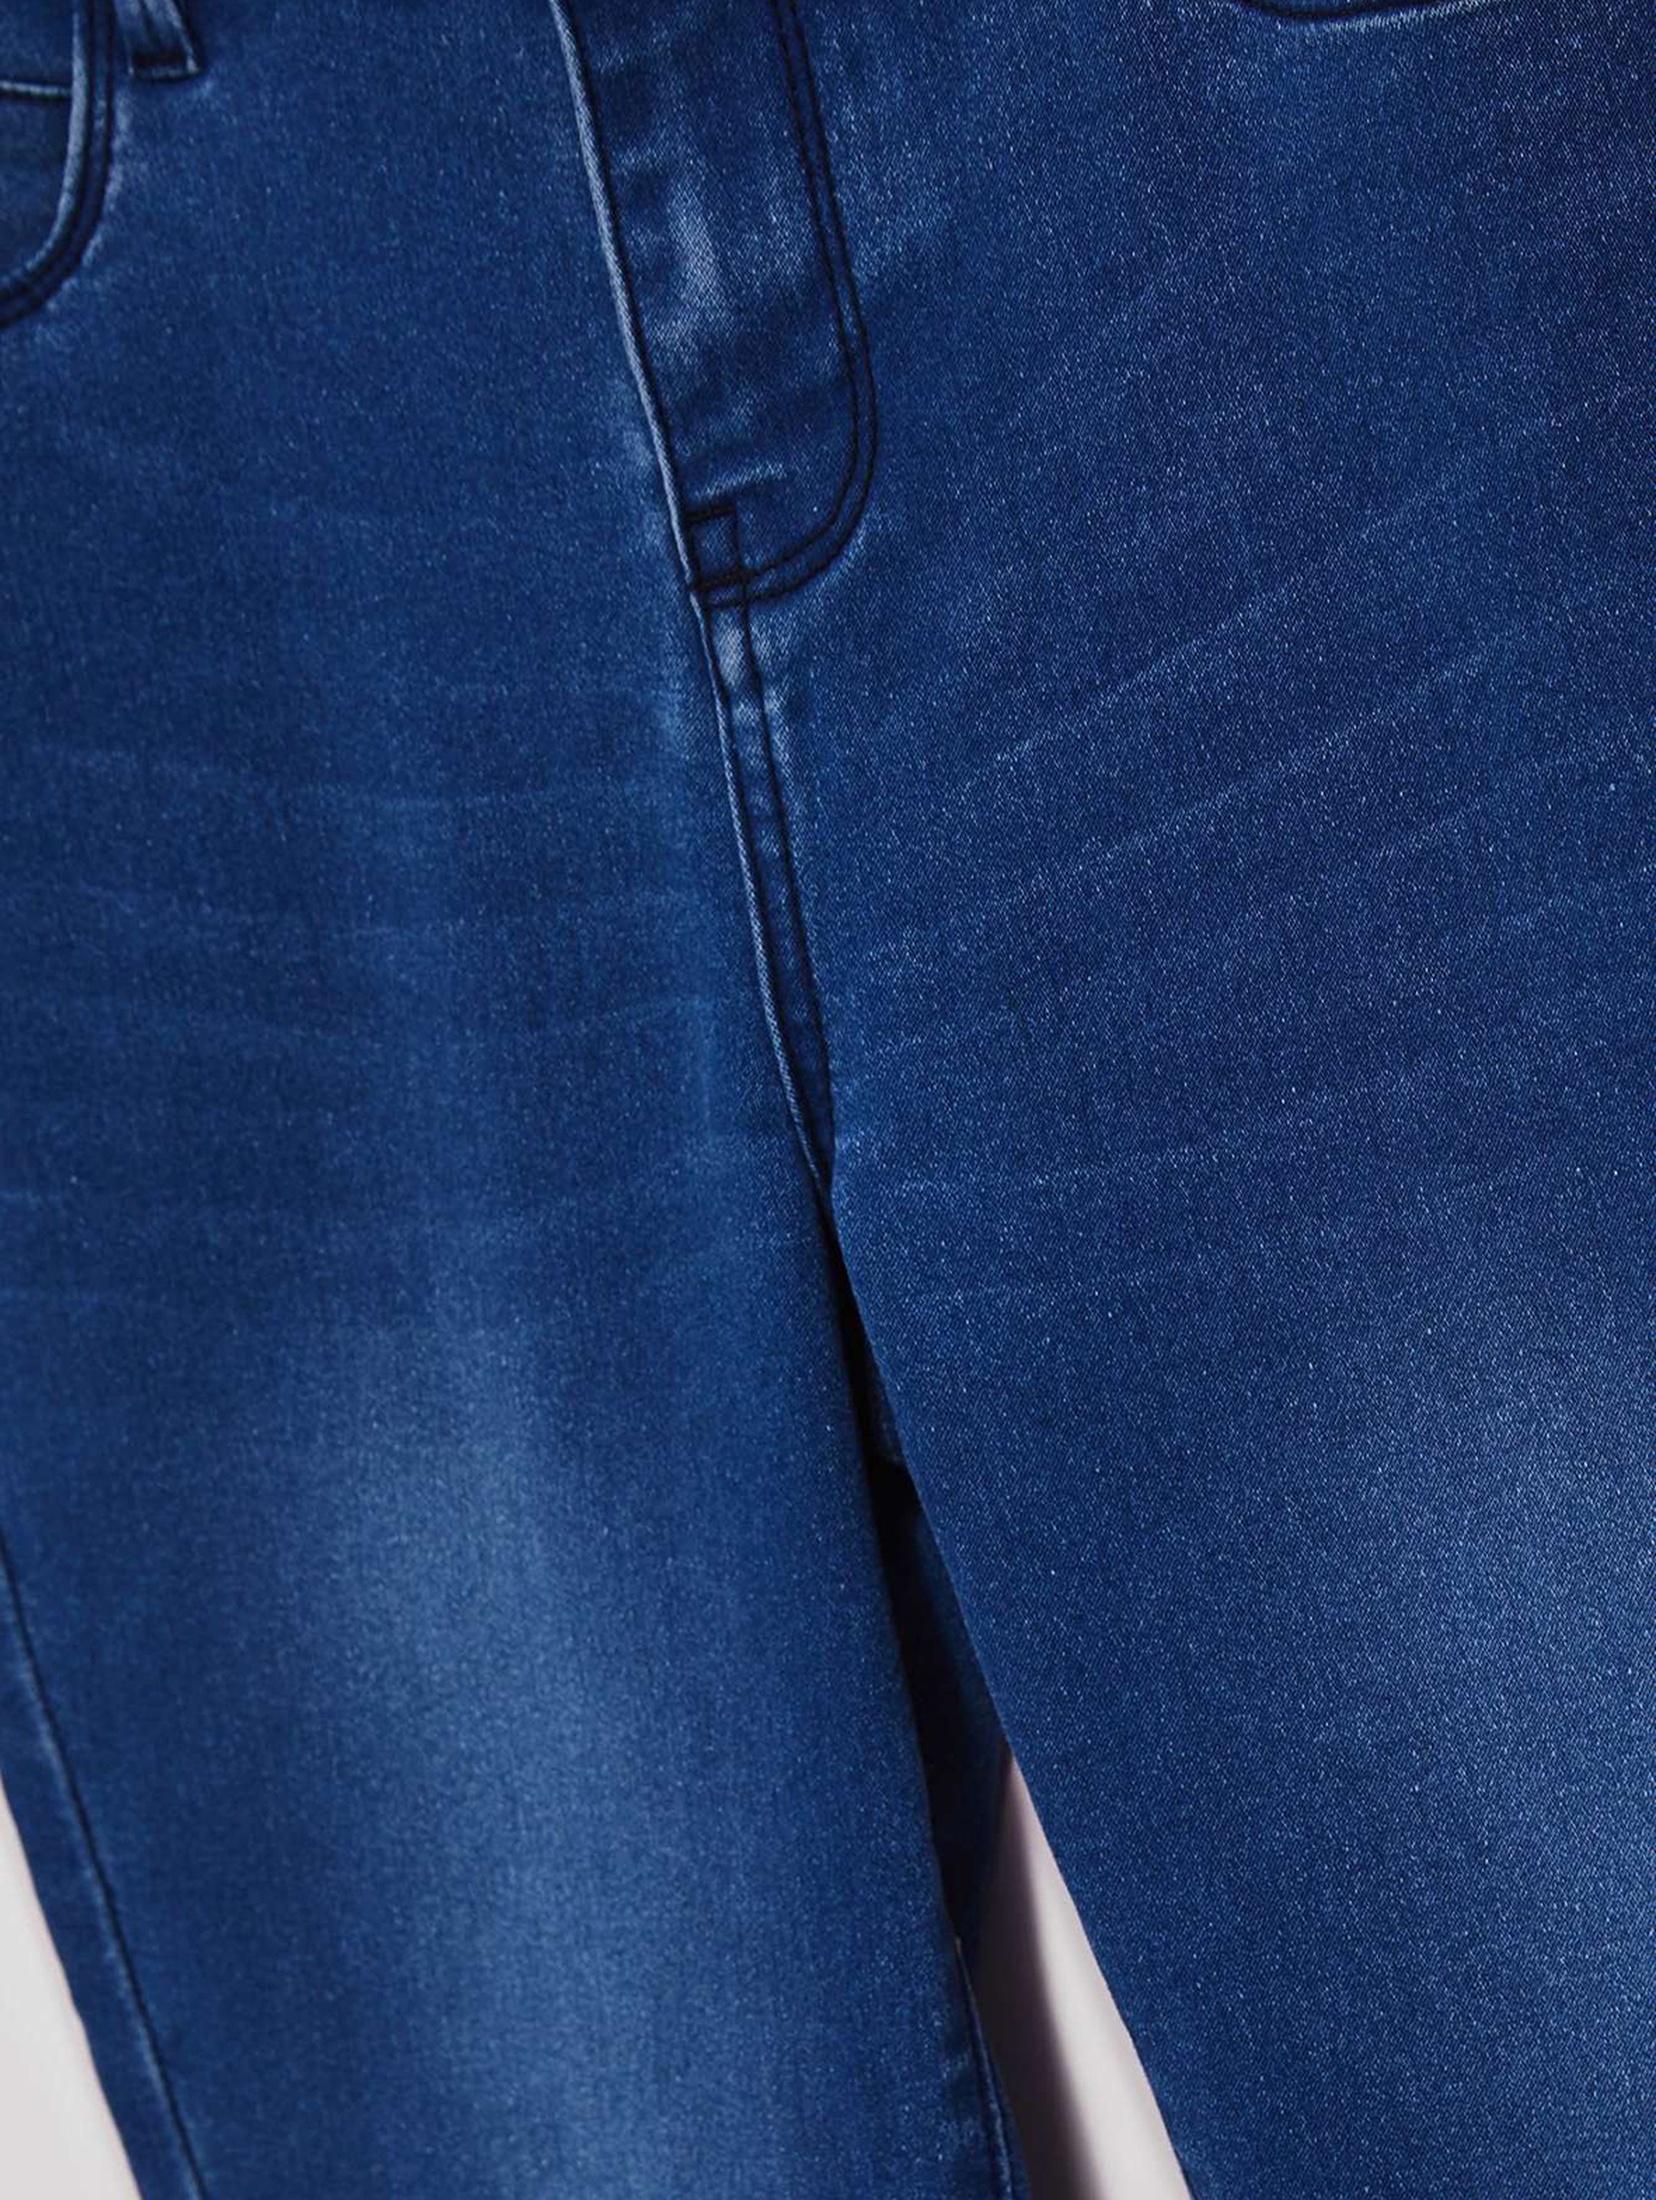 Spodnie damskie jeansowe typu push up